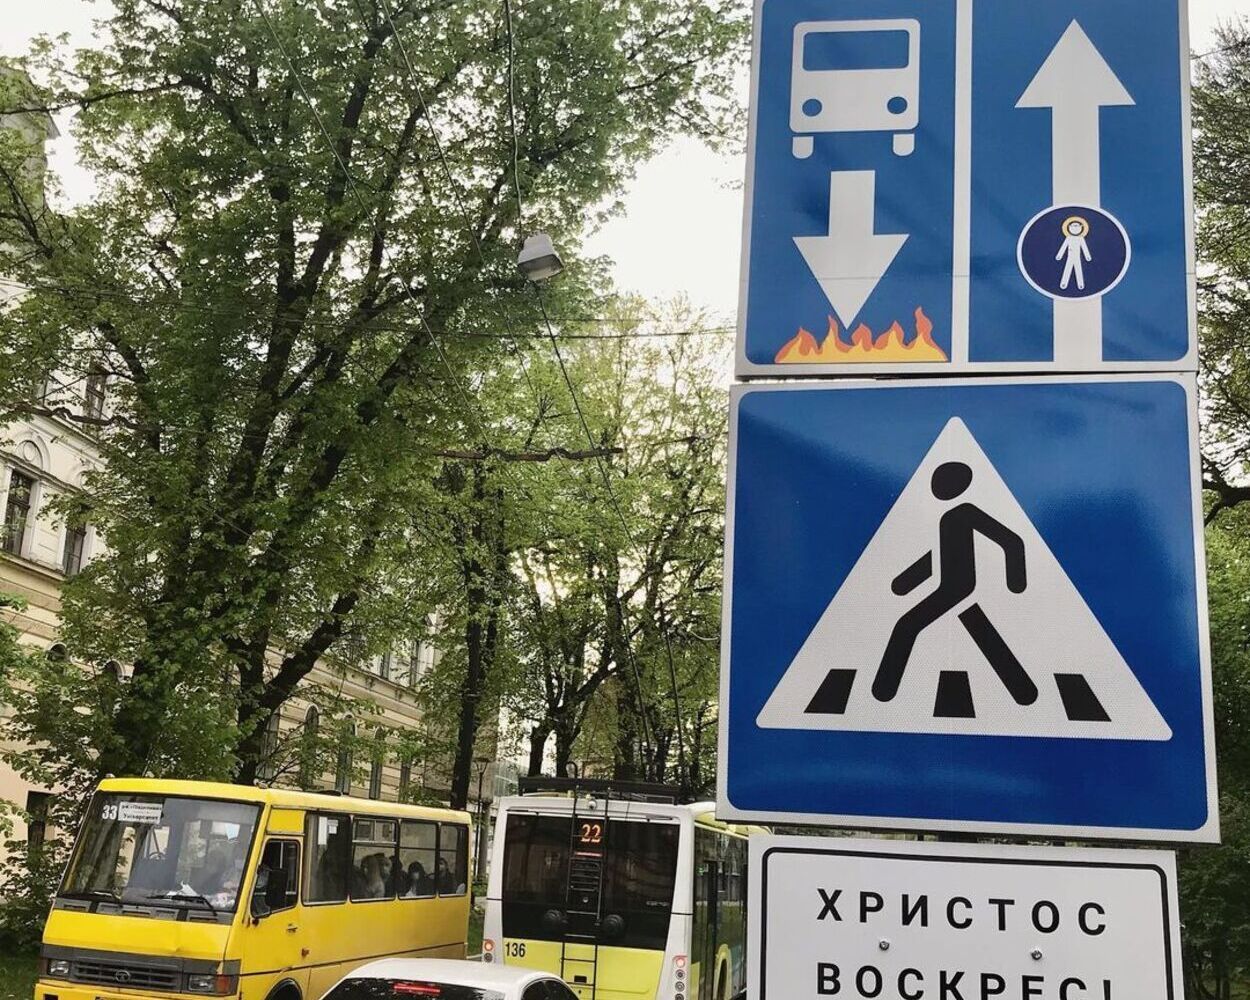 Ісус, Данило Галицький та жарти: у Львові з'явились оригінальні дорожні знаки – фото